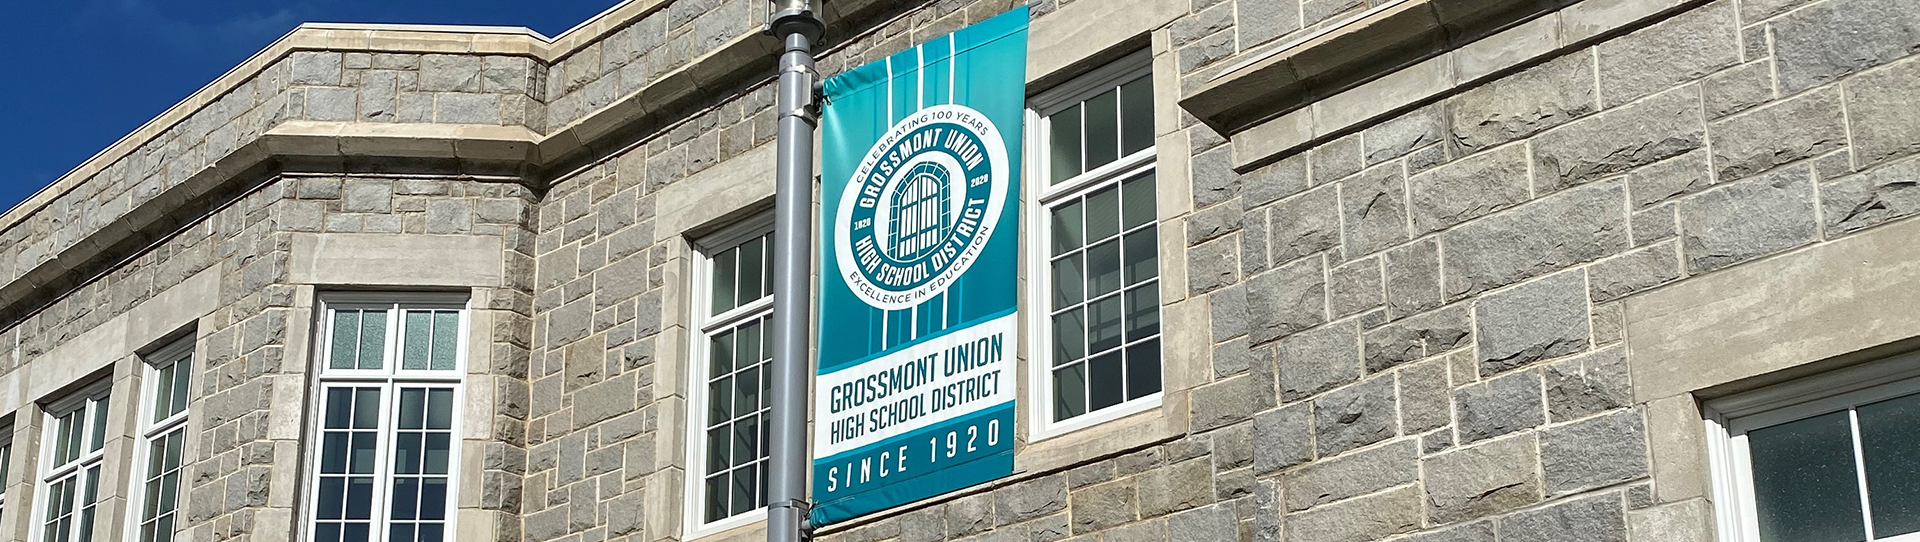 Banner Image of Grossmont High School